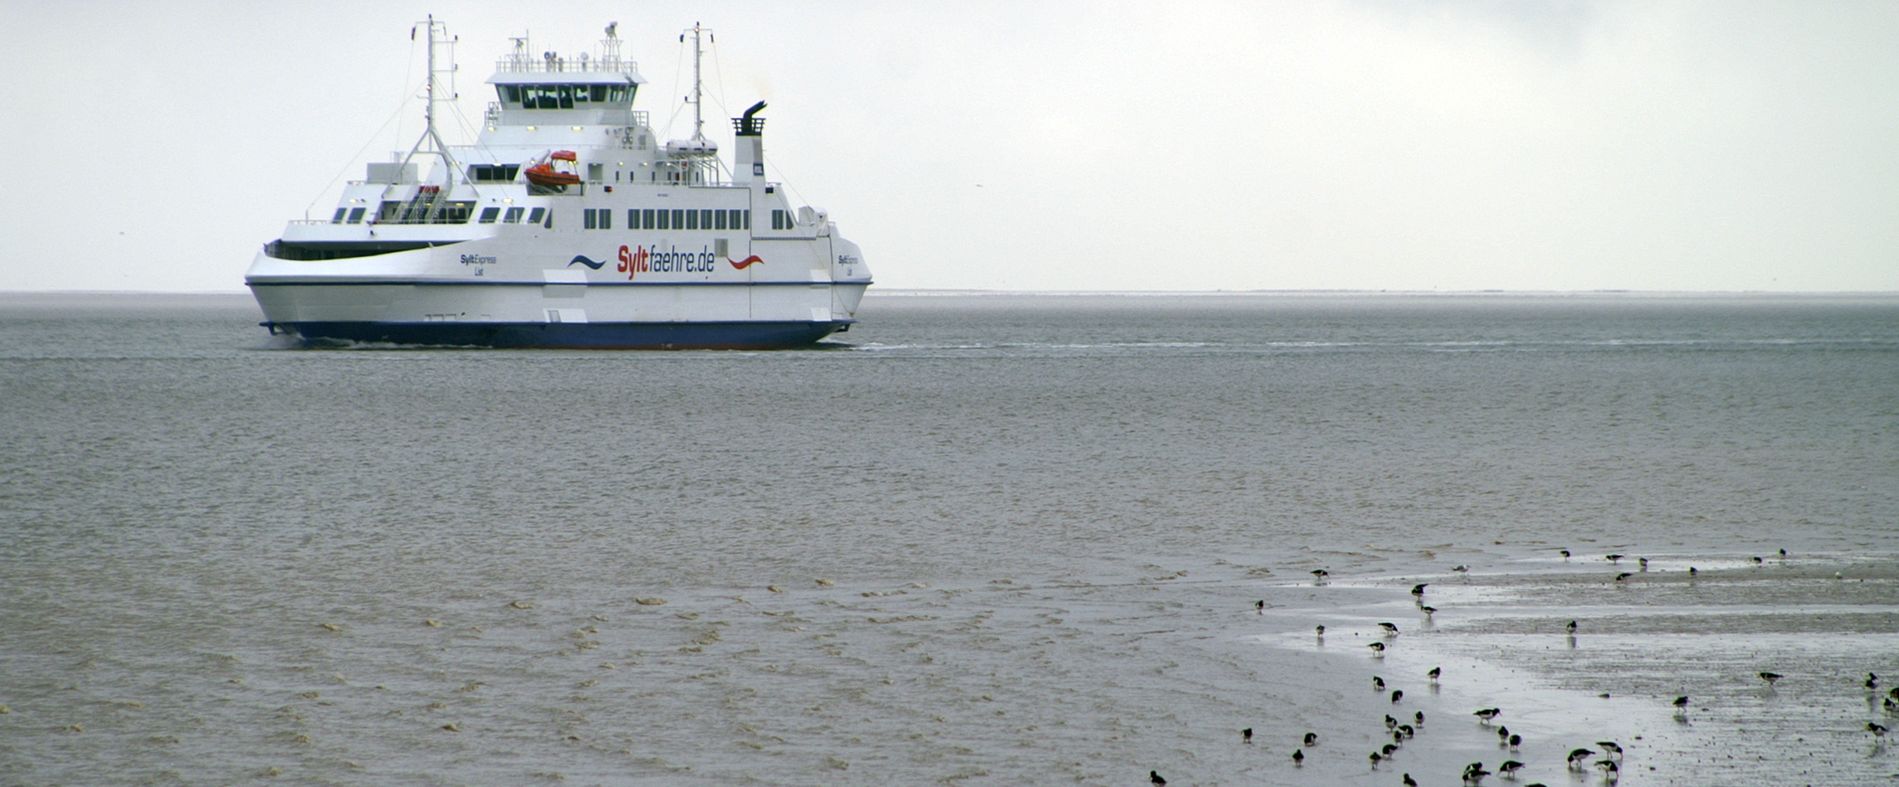 Syltfähre auf See am Wattenmeer mit Austernfischer.